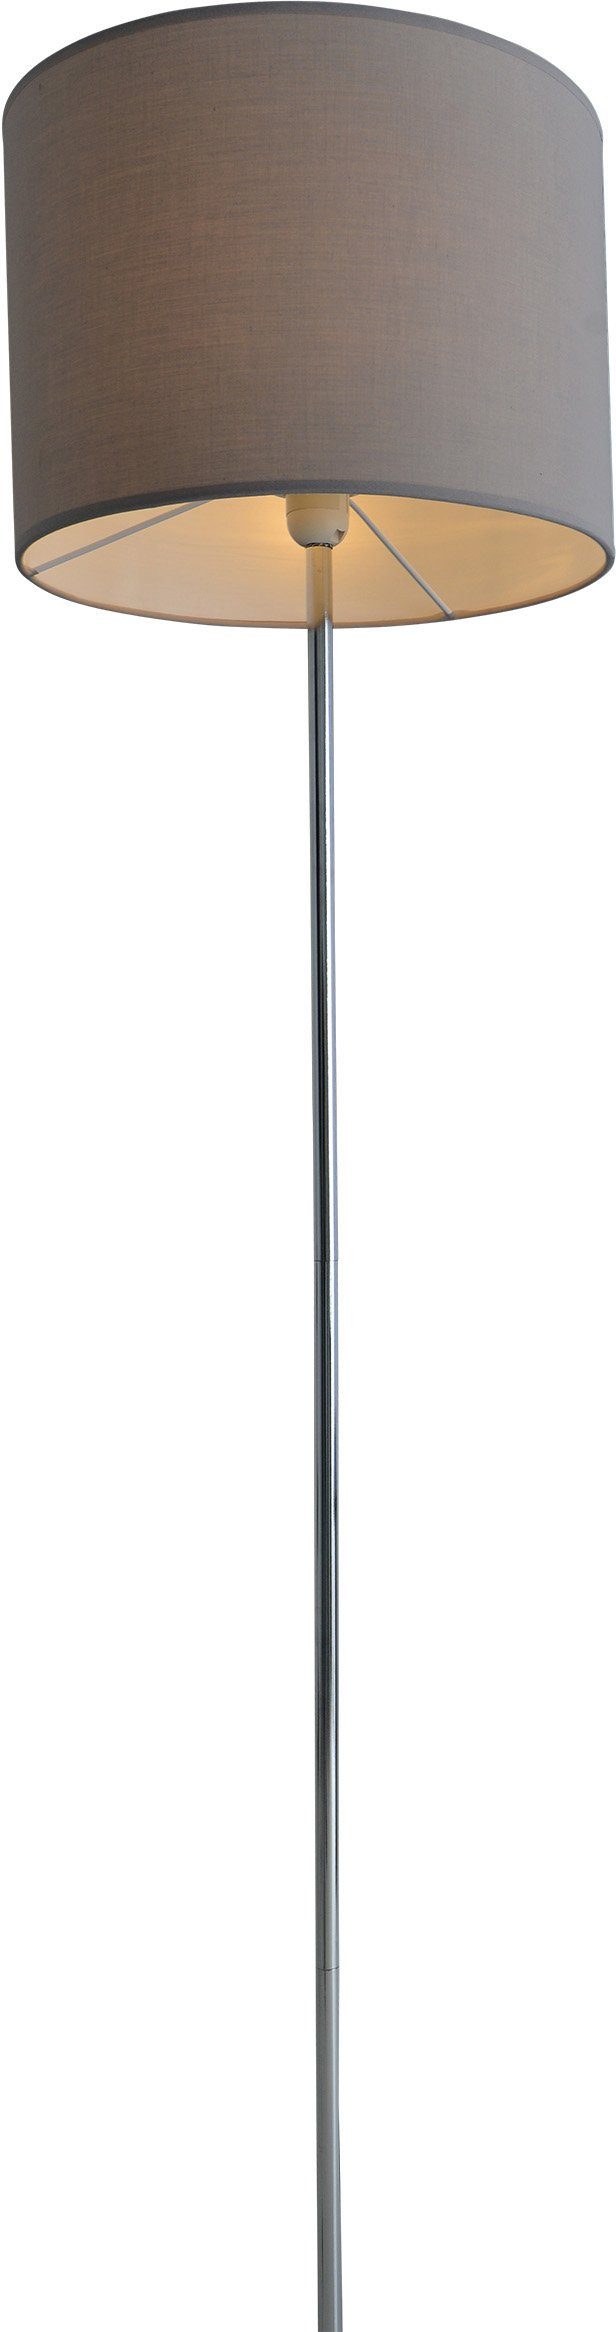 näve Stehlampe New York, ohne 34,5cm grau Höhe Durchmesser Gestell E27 chrom max Schirm 40W Leuchtmittel, 1x 160cm